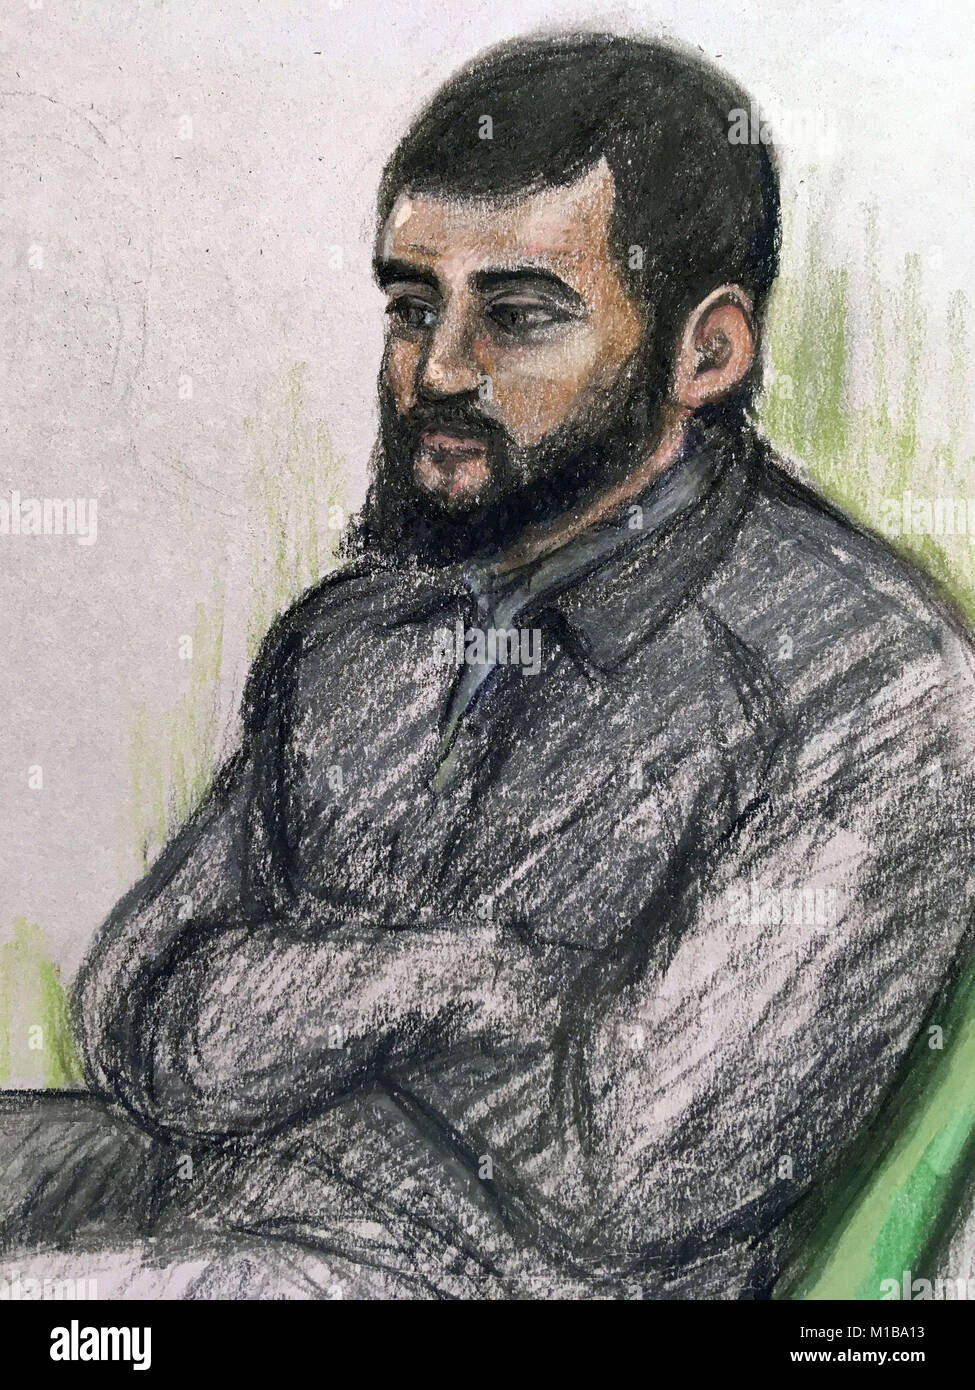 Cour croquis d'artiste par Elizabeth Cook en date du 26/01/18 de d'Umar Haque comme il assister à l'Old Bailey, Londres, où il est à l'essai sur un présumé complot terroriste au Royaume-Uni. Banque D'Images